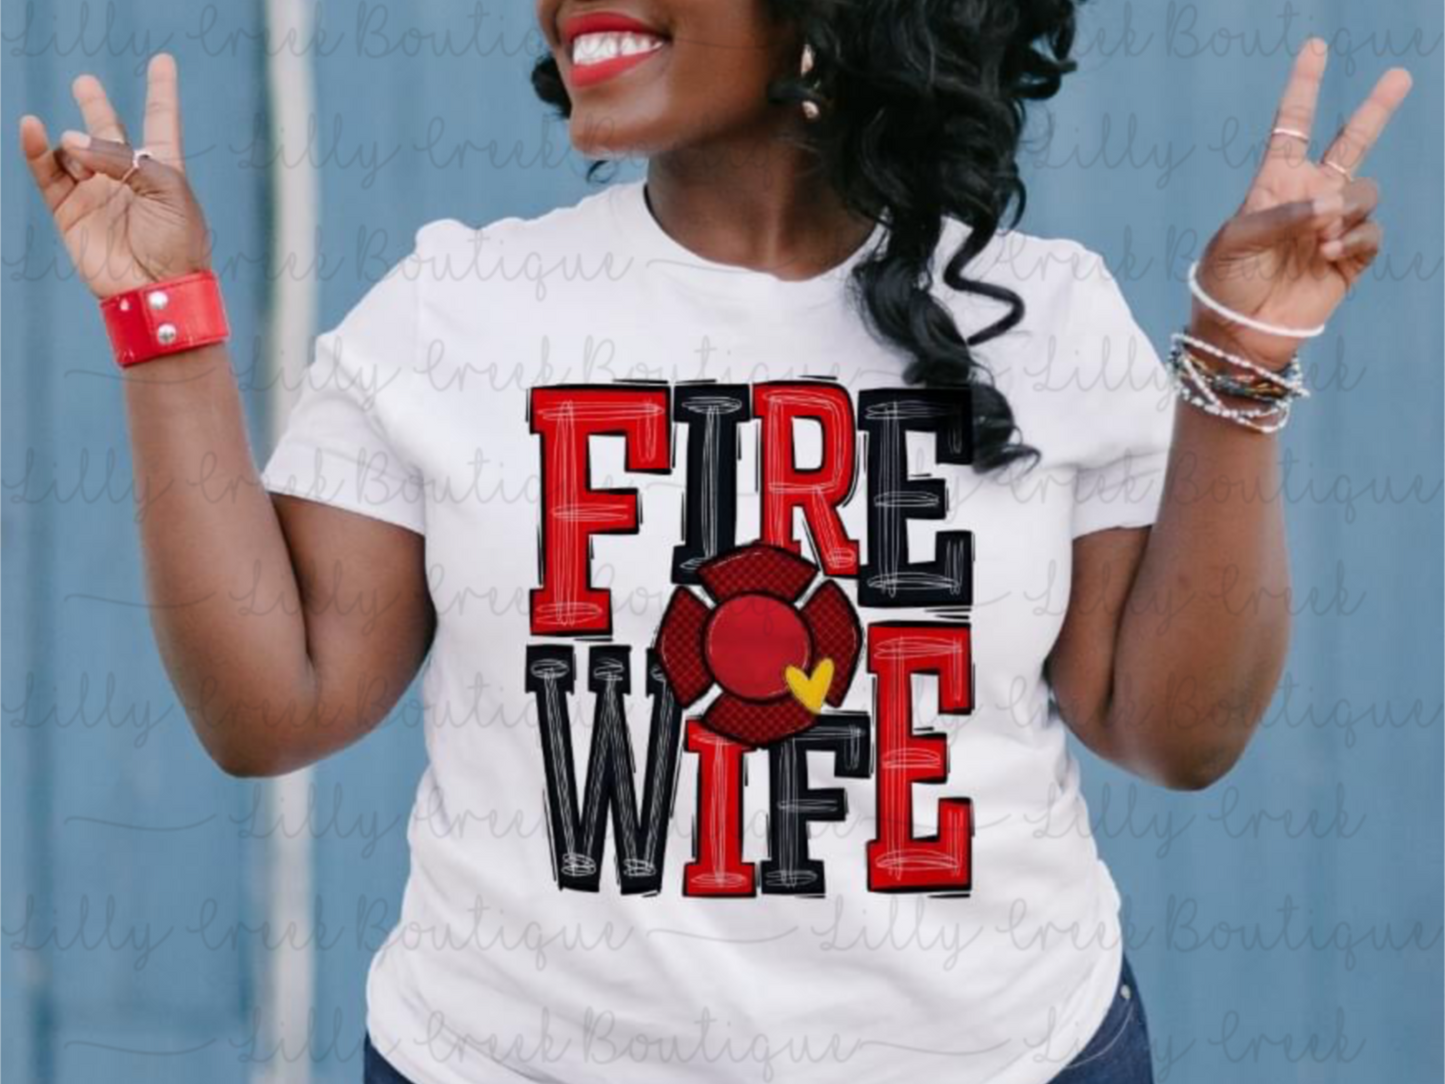 FIRE WIFE TEE